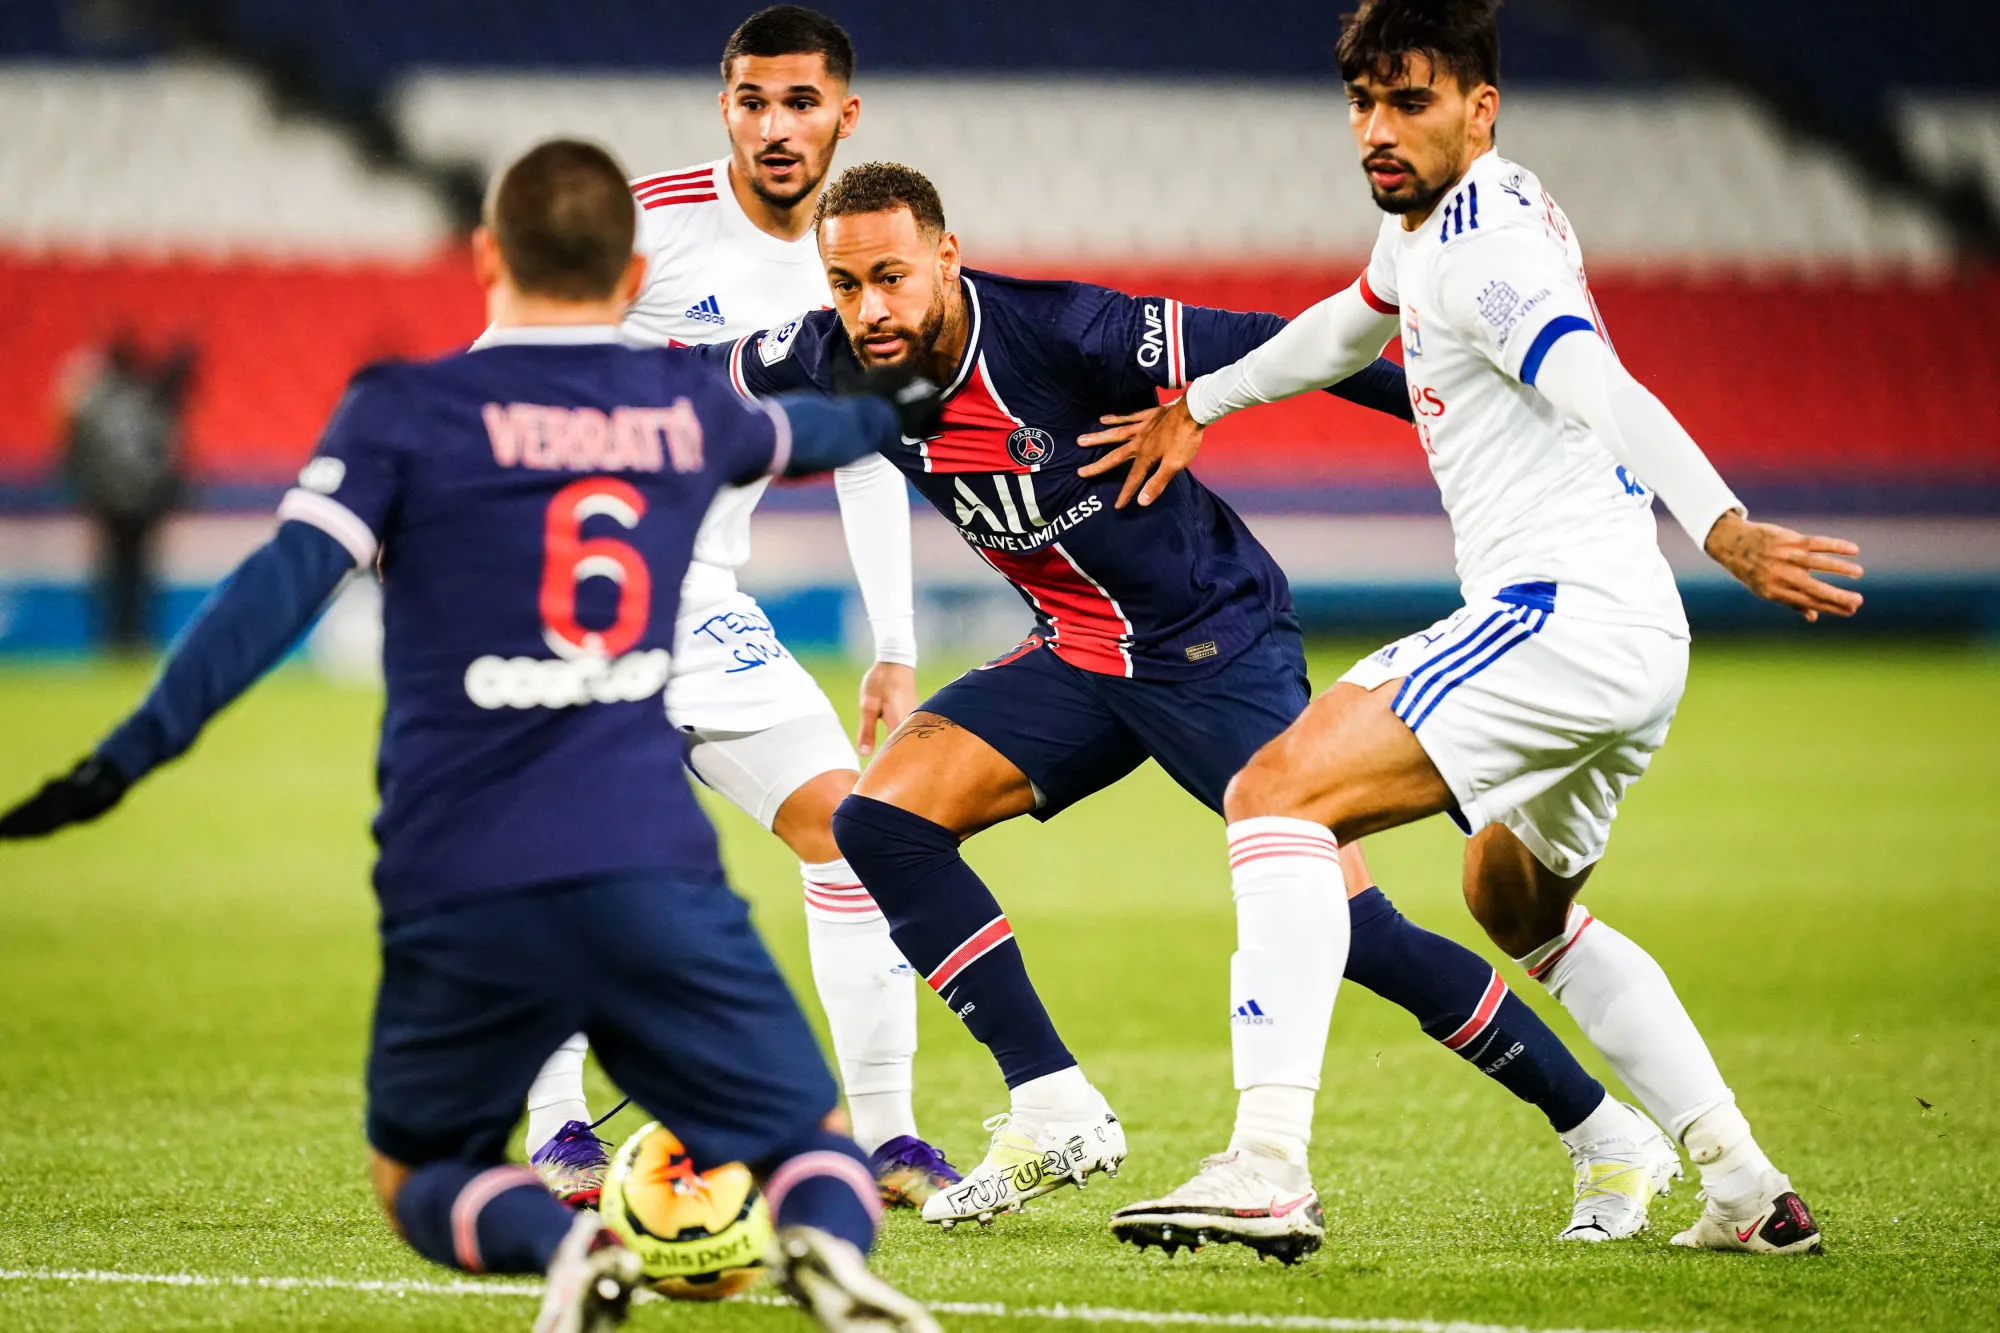 Pronostic PSG Lyon : Analyse, cotes et prono du match de Ligue 1